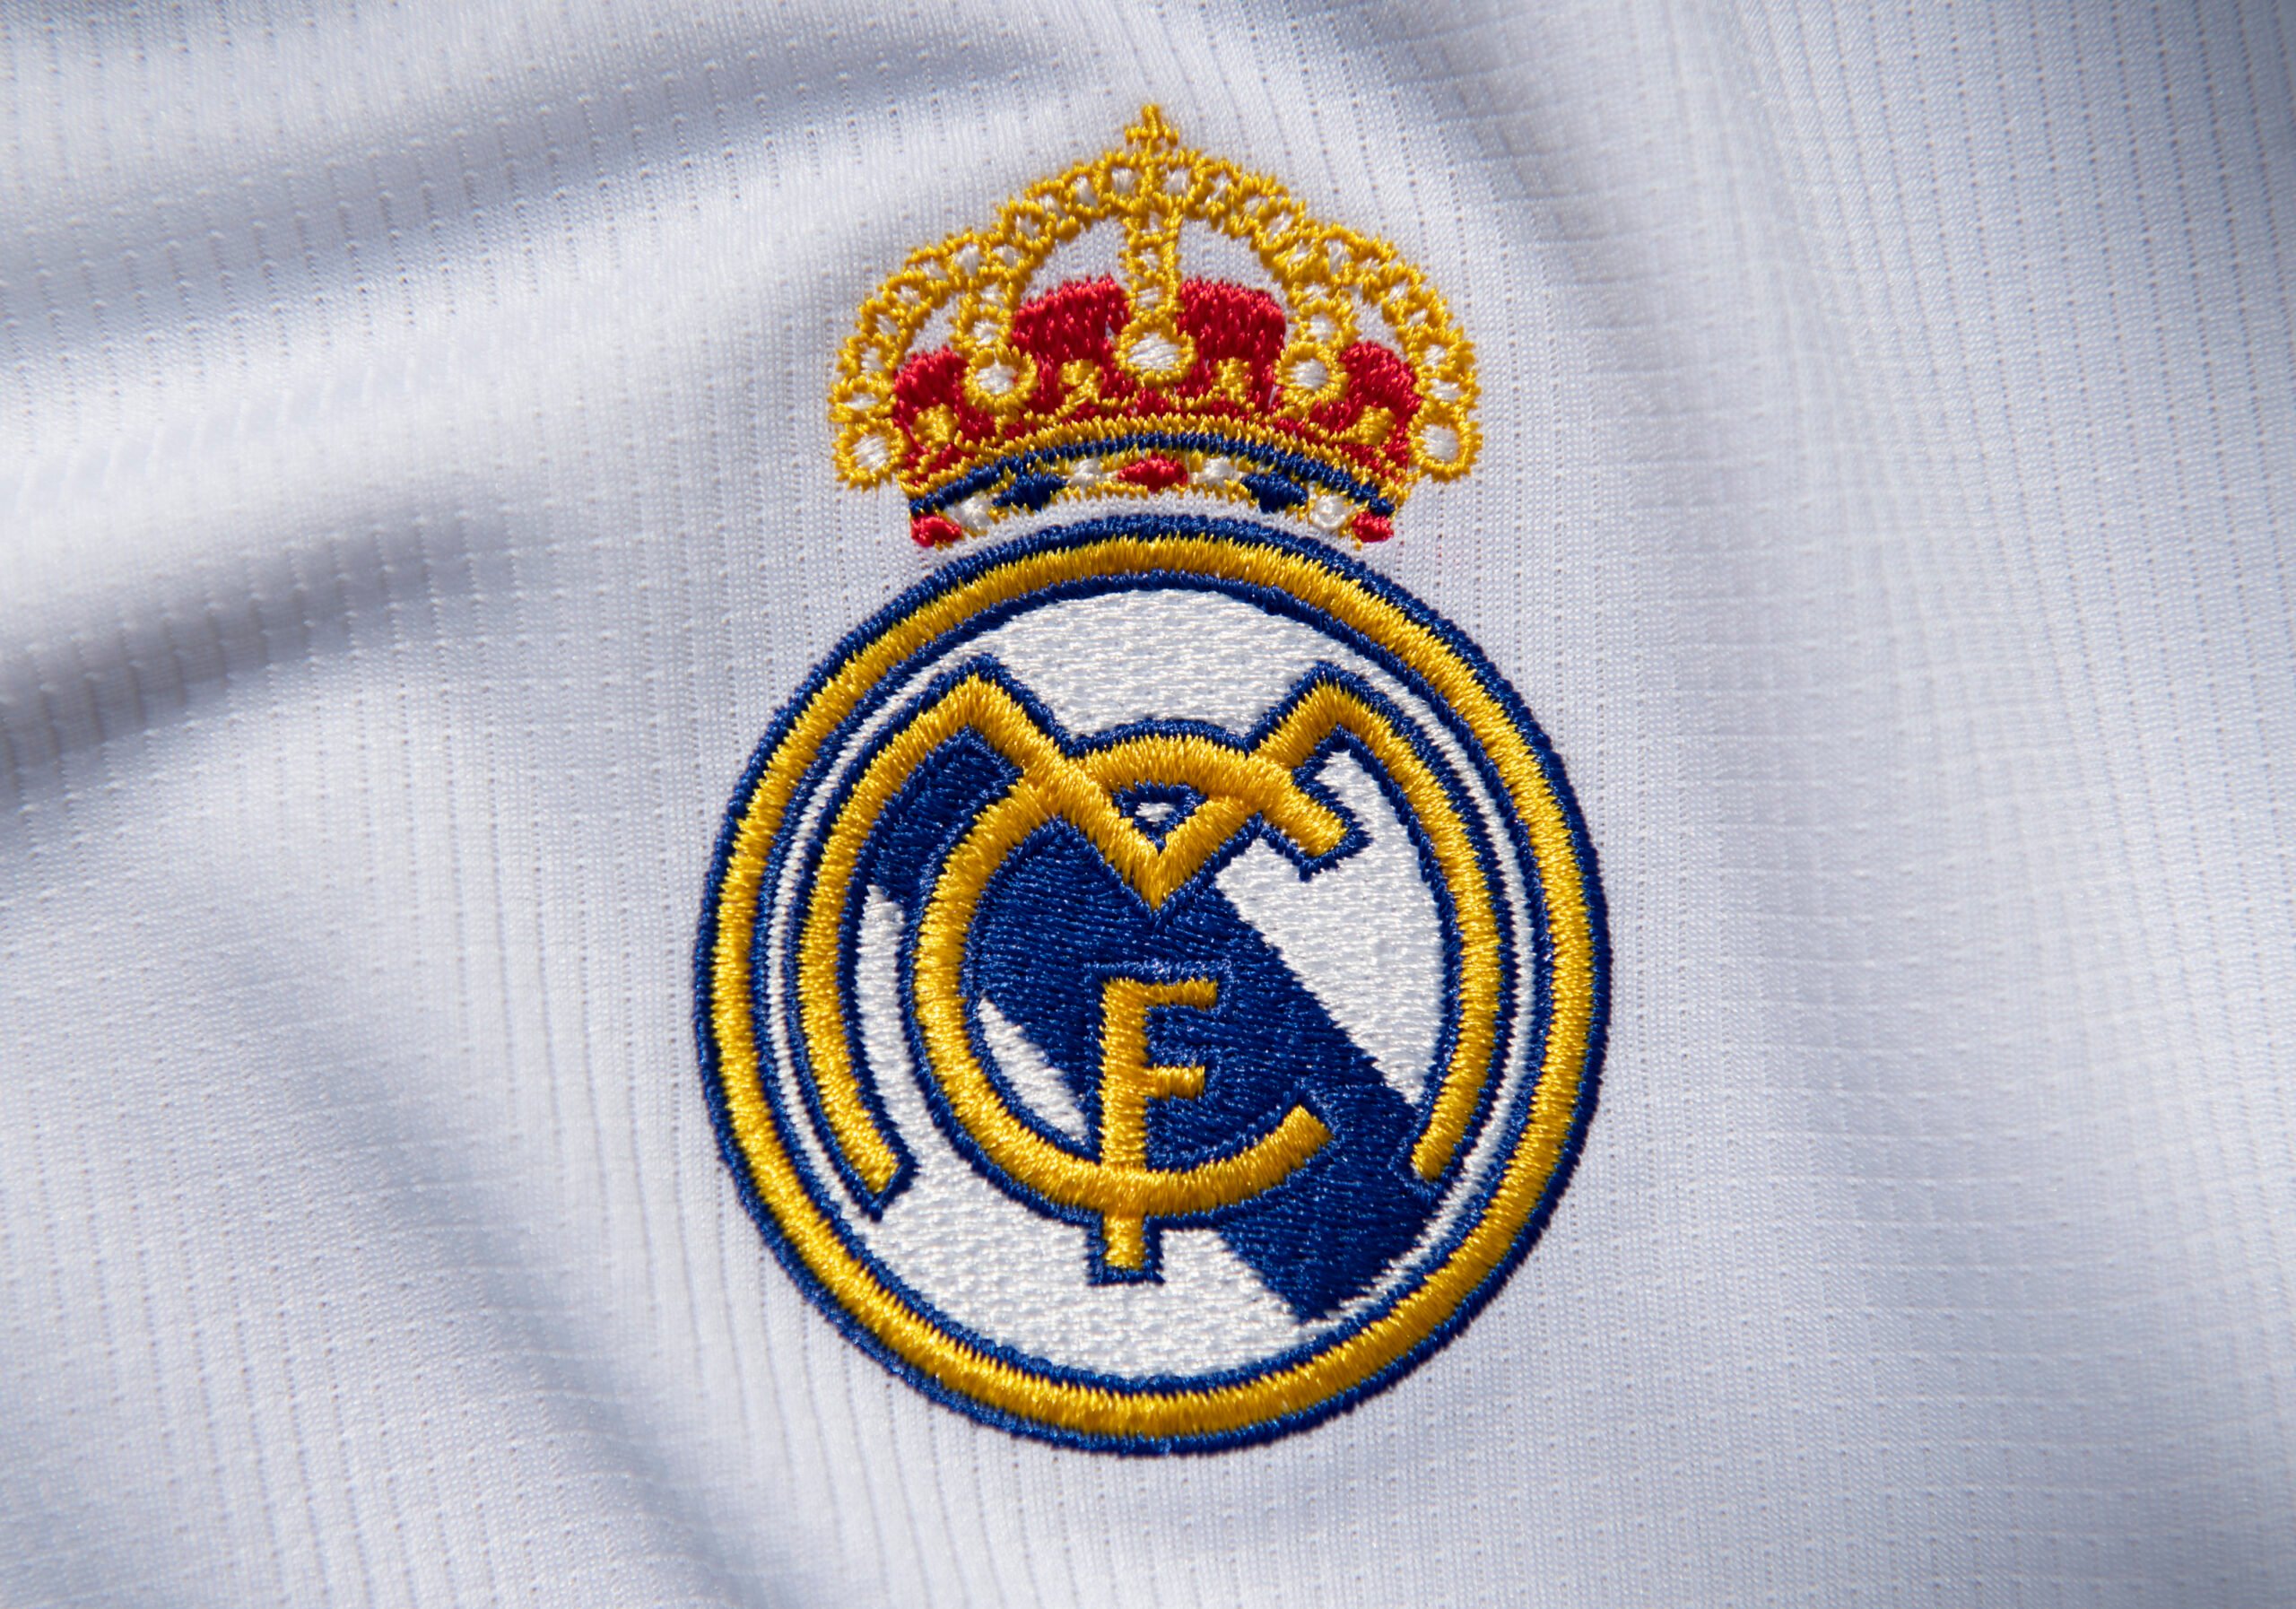 AG à Dubaï : Le Real Madrid démonte les dirigeants de la Liga avec un communiqué cinglant